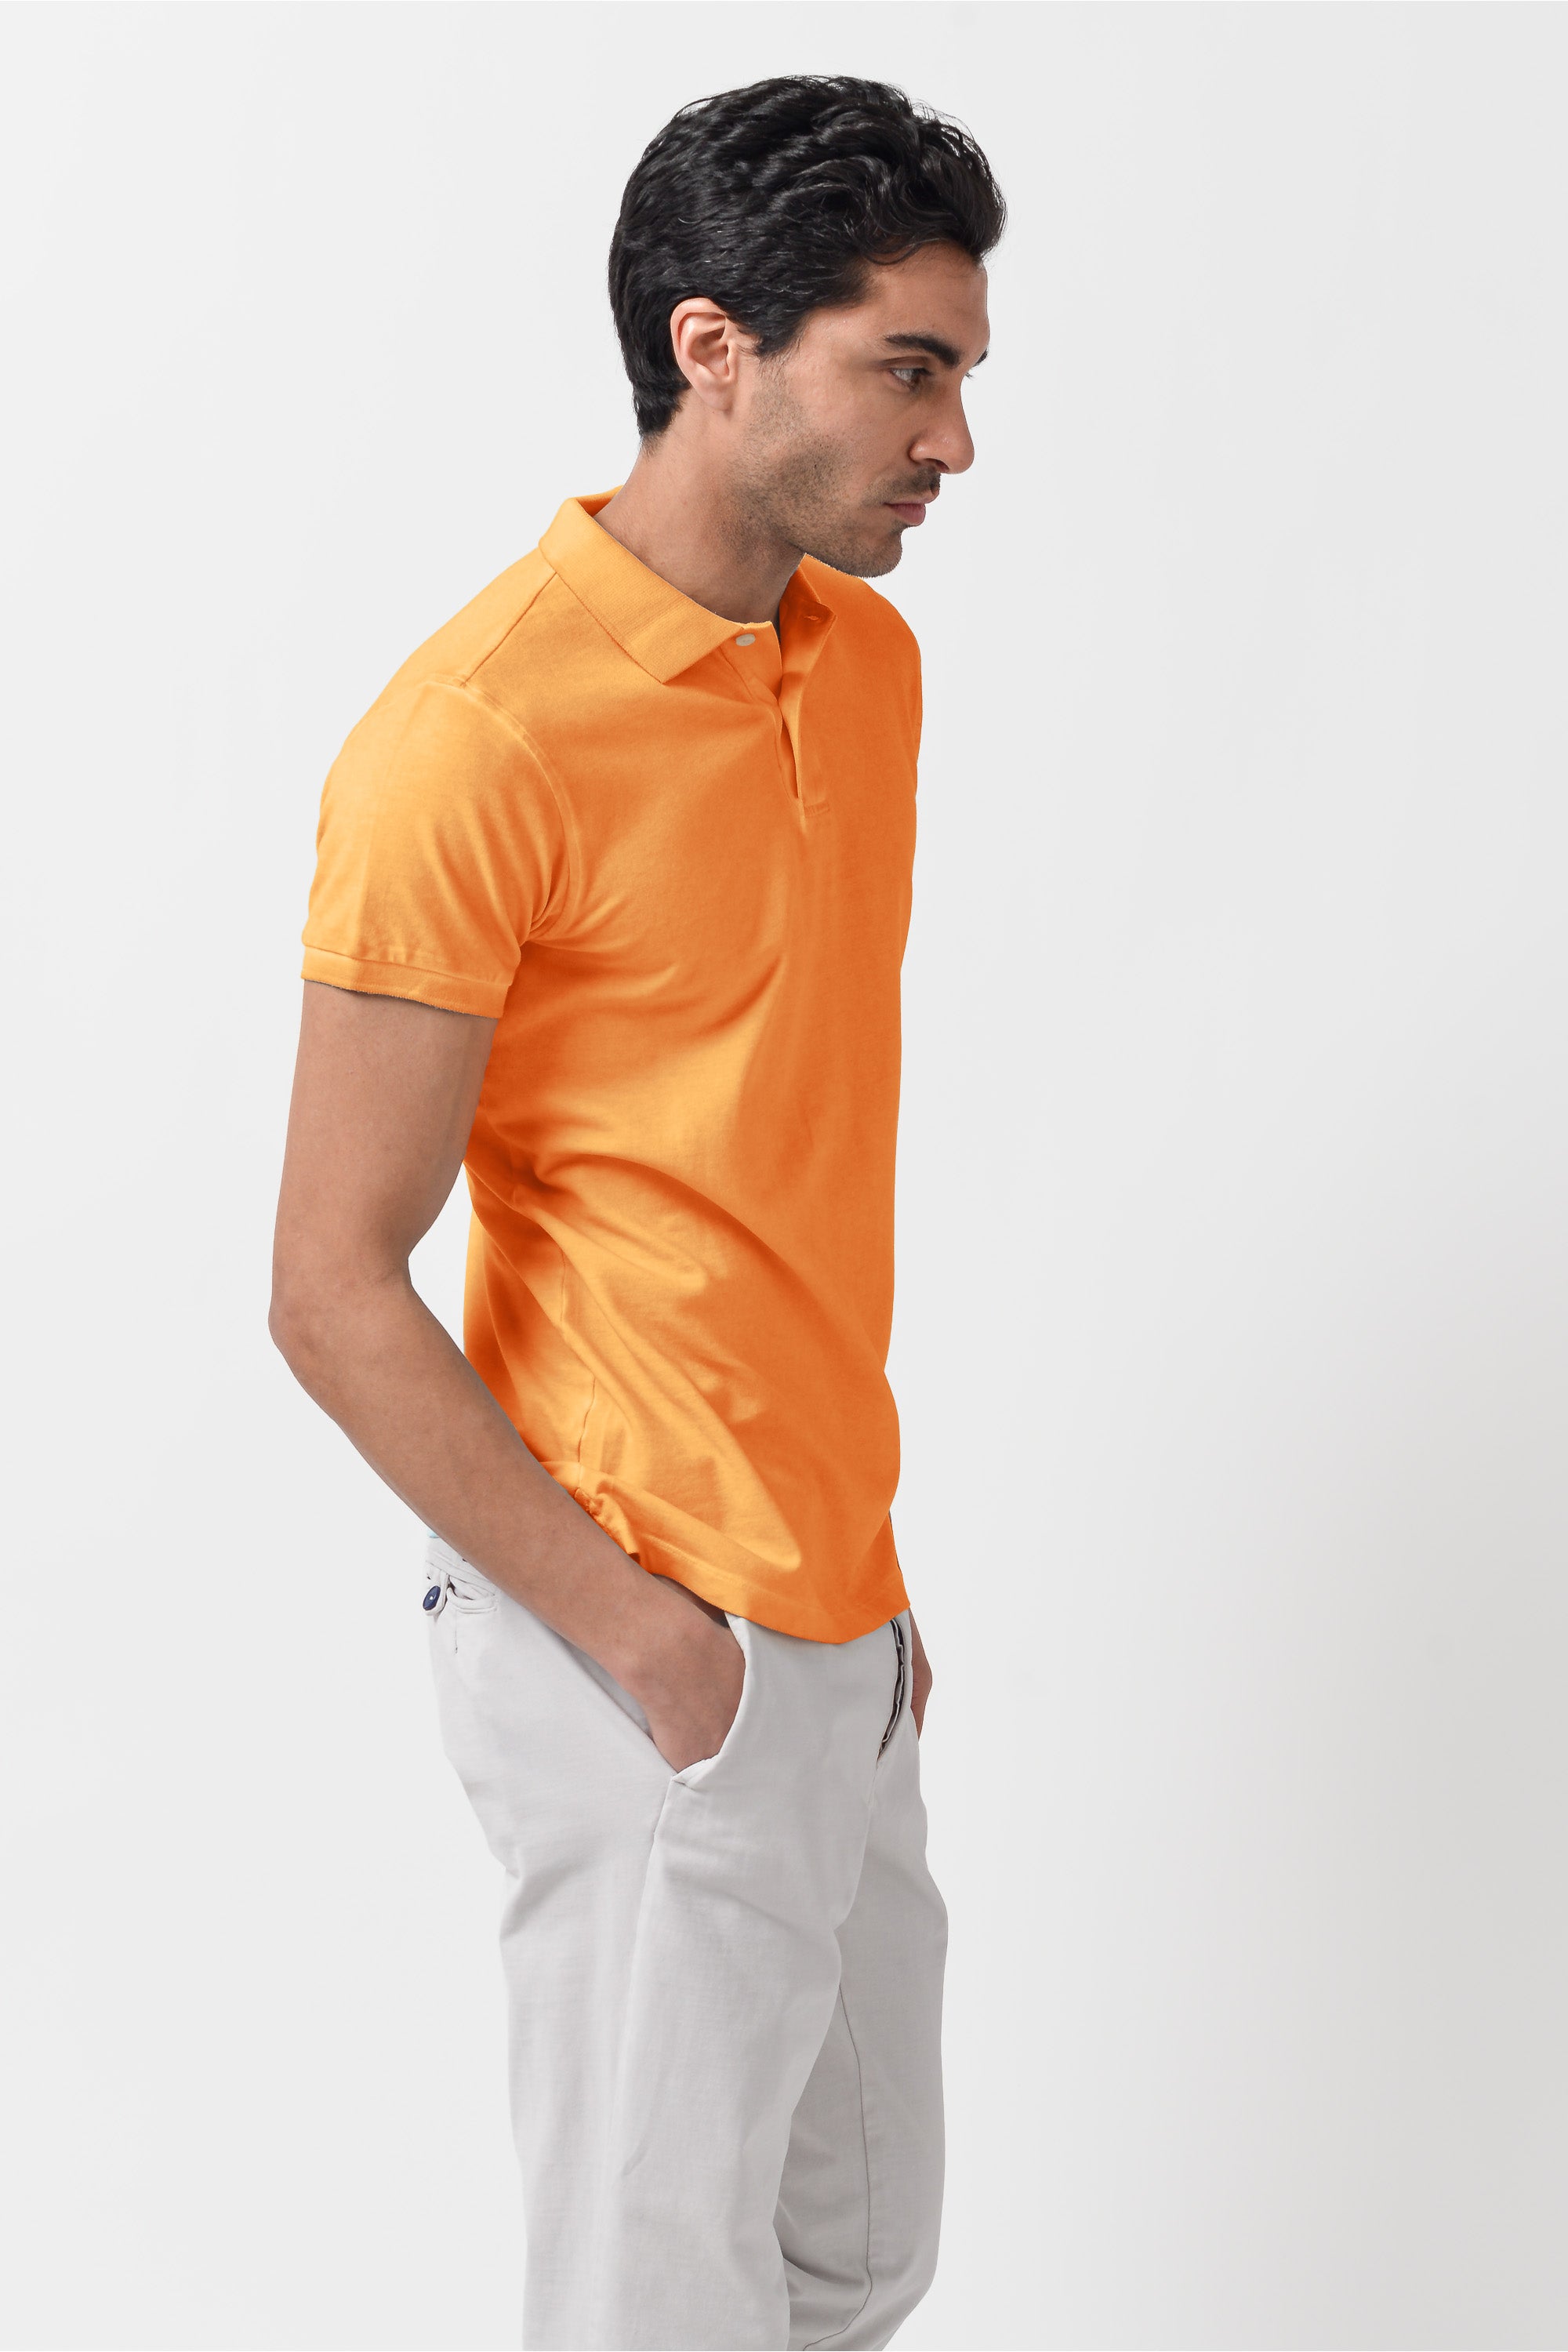 Club Polo Shirt - Apricot